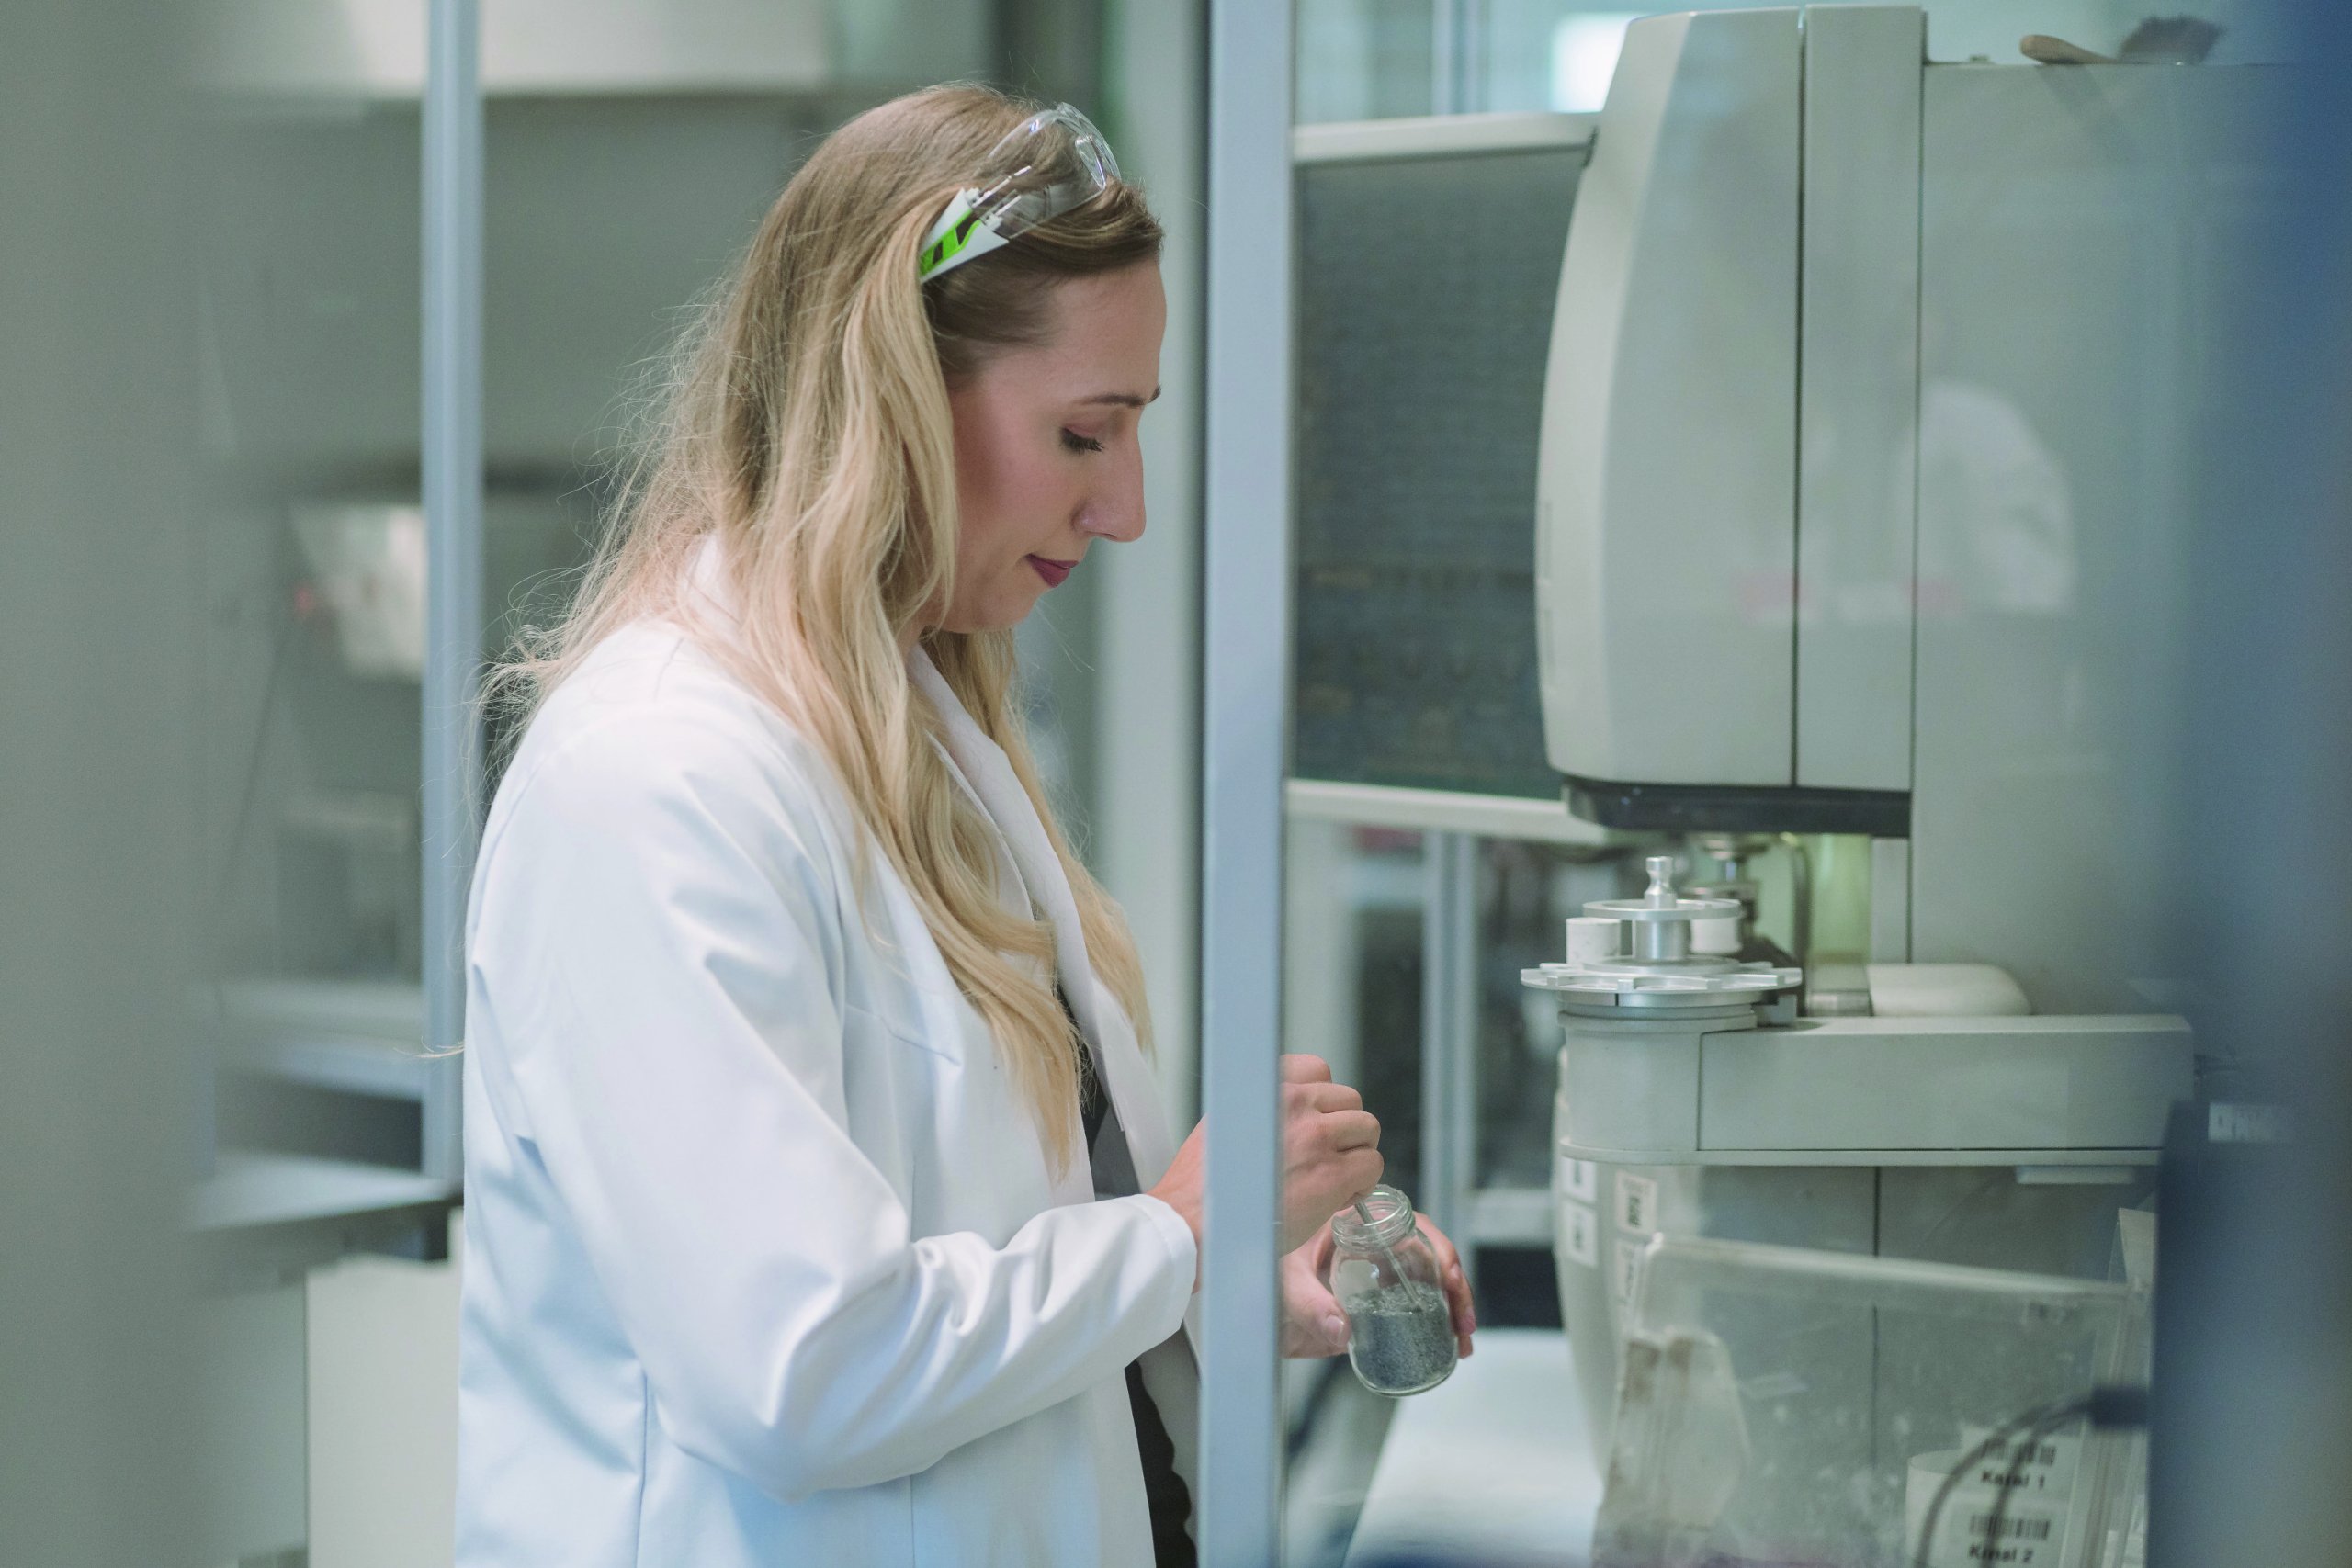 voestalpine Mitarbeiterin ist dabei, im Labor den Inhalt eines Glasbehälters in das Mikroskop zu legen